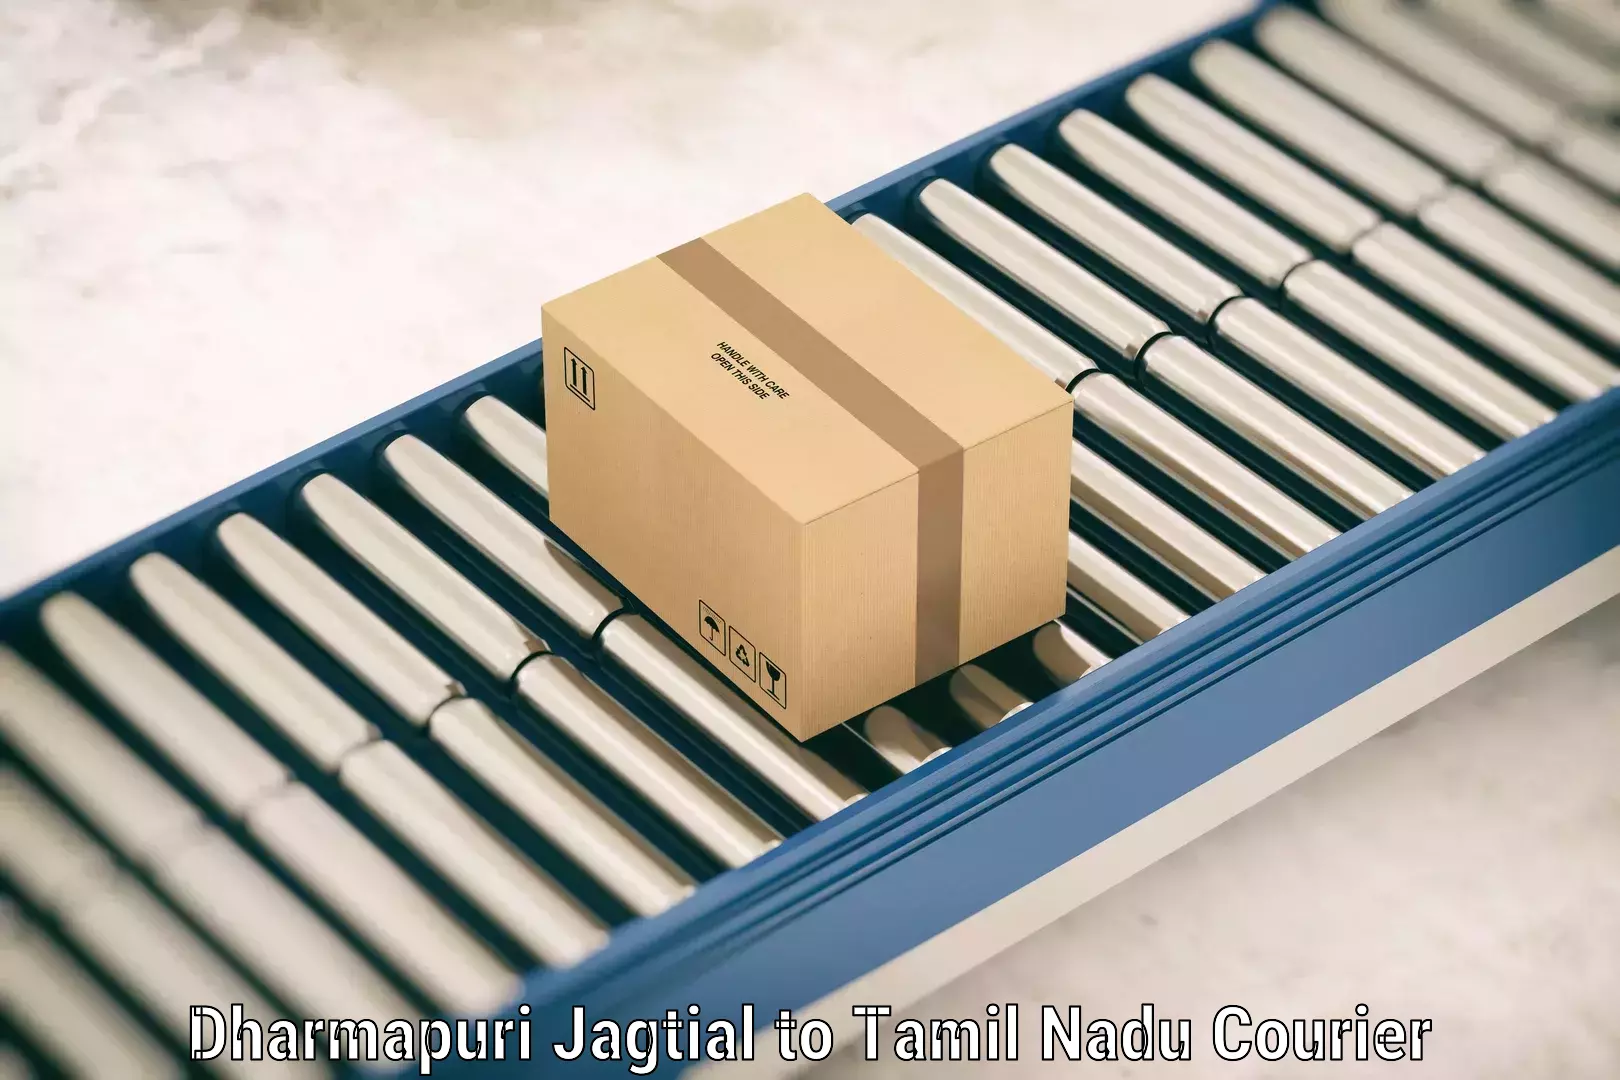 Baggage transport innovation in Dharmapuri Jagtial to Mettupalayam